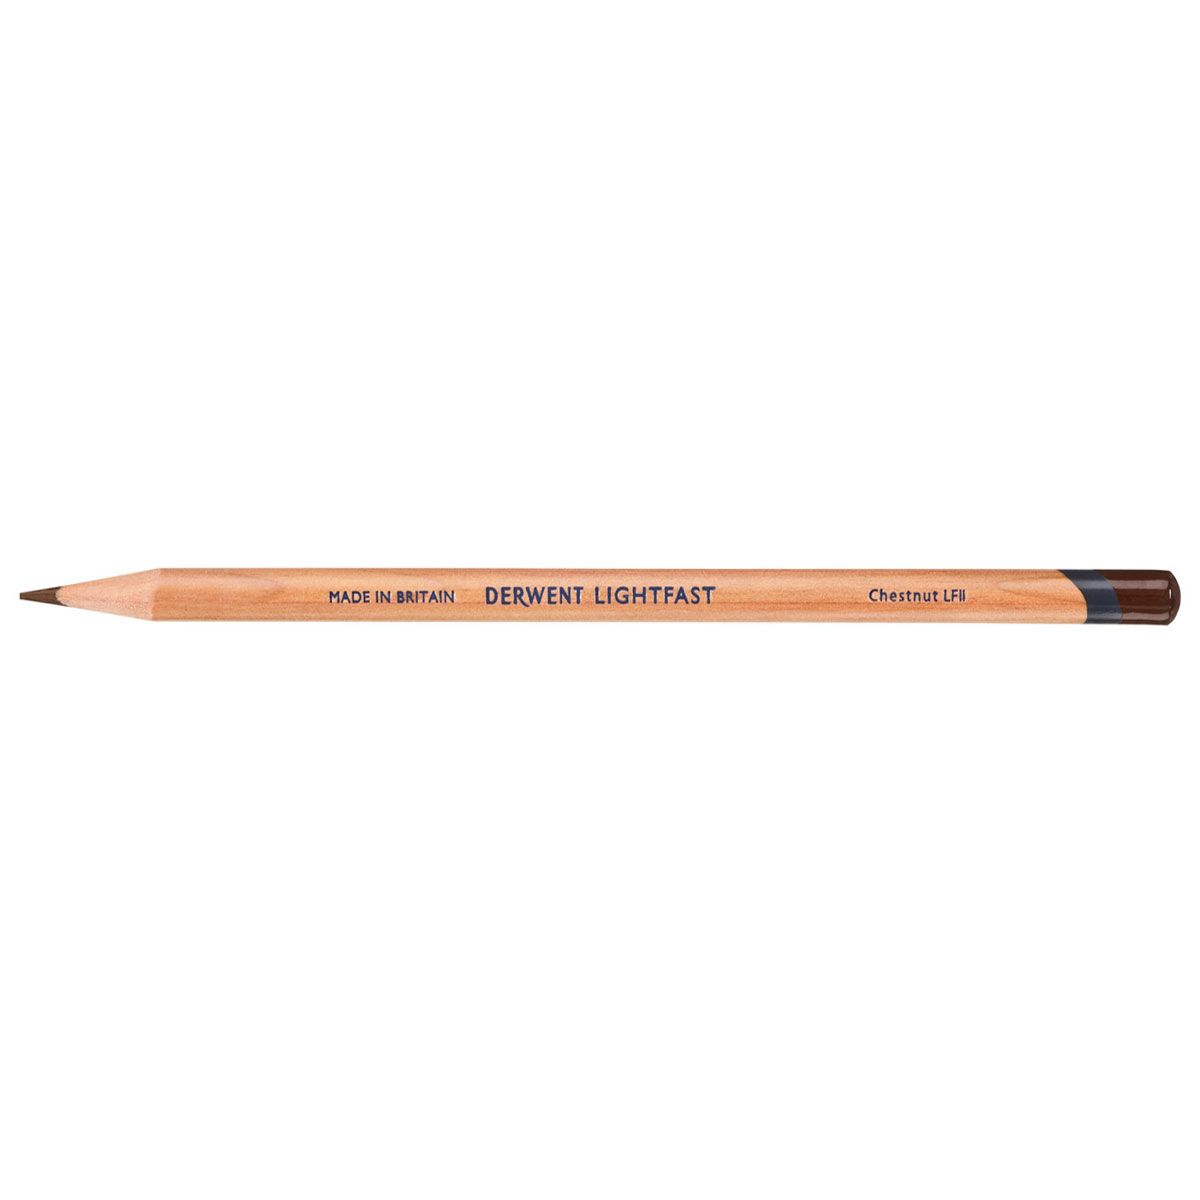 NEW Derwent Lightfast Pencil Colour: Chestnut